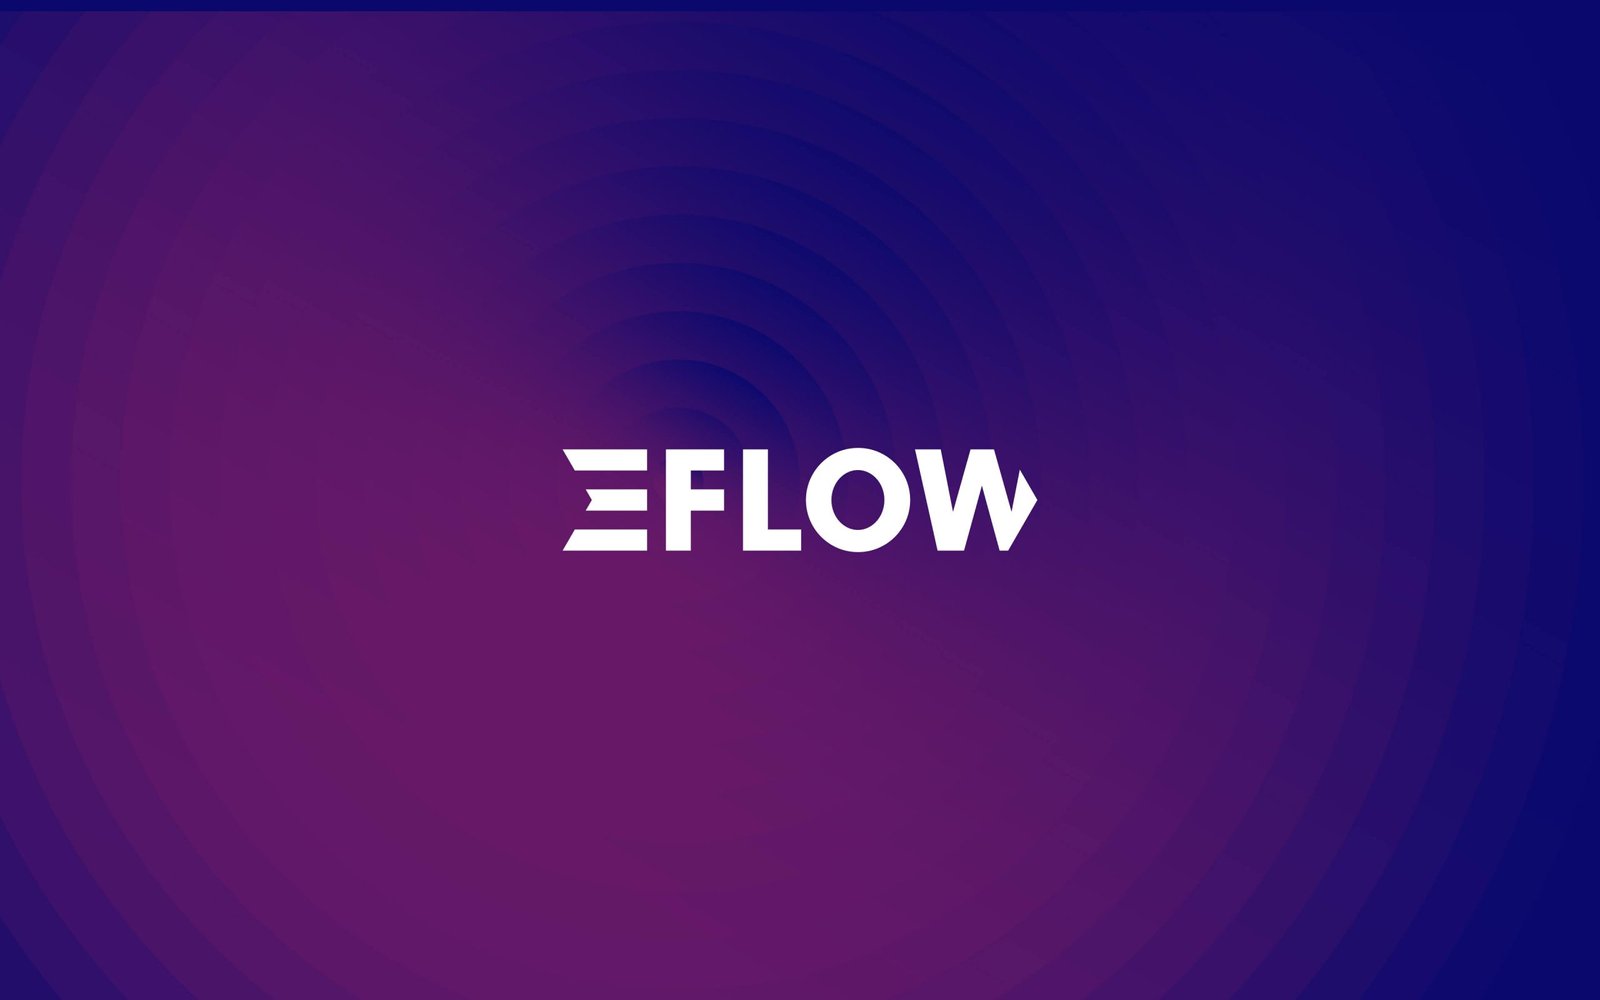 E-FLOW